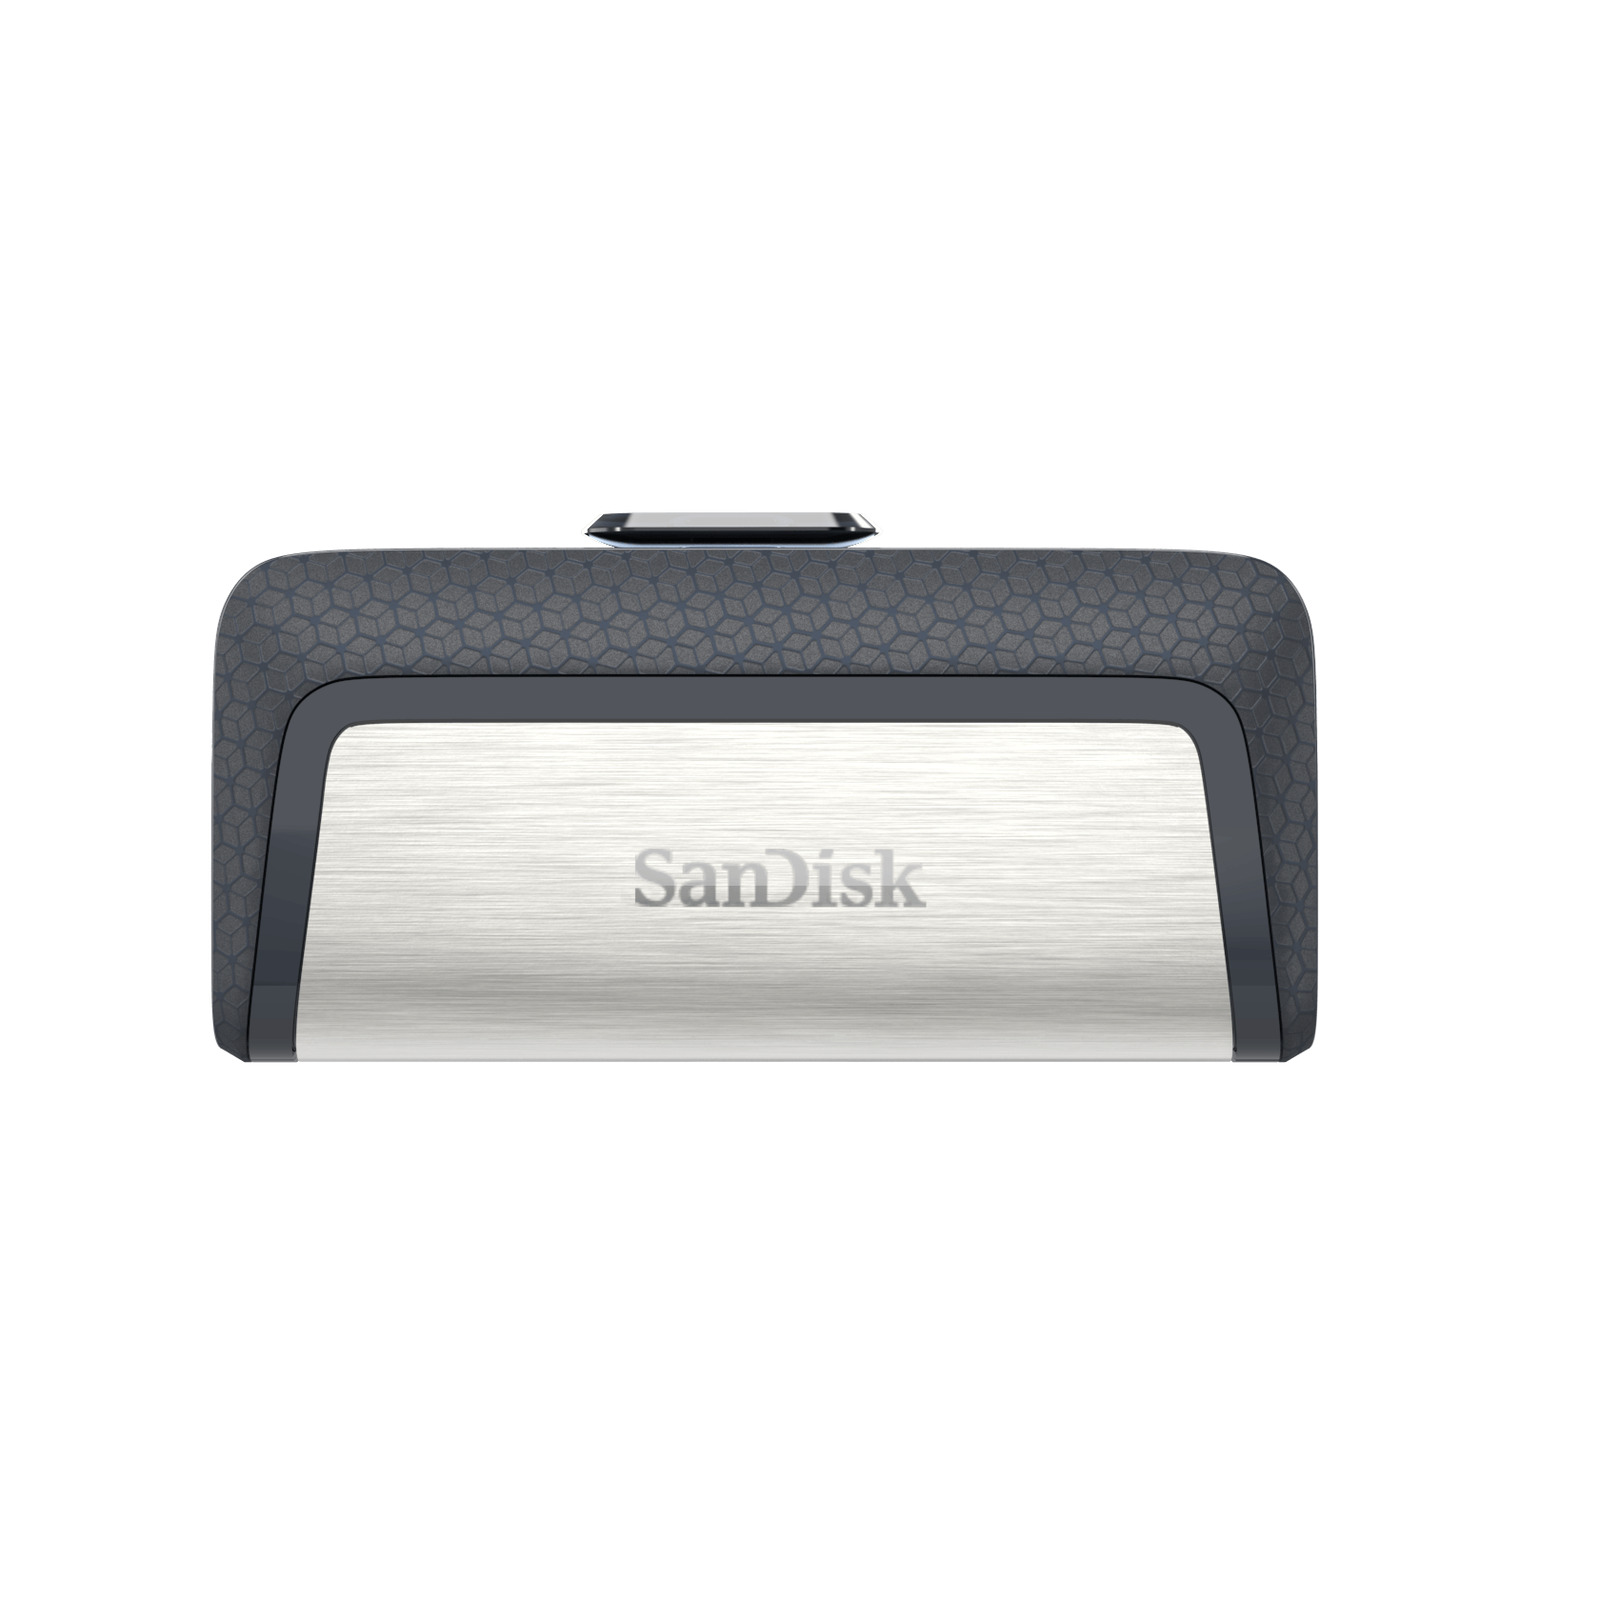 SanDisk 64GB Ultra Dual Drive USB Type-C, USB 3.1 Flash Drive - SDDDC2-064G-G46